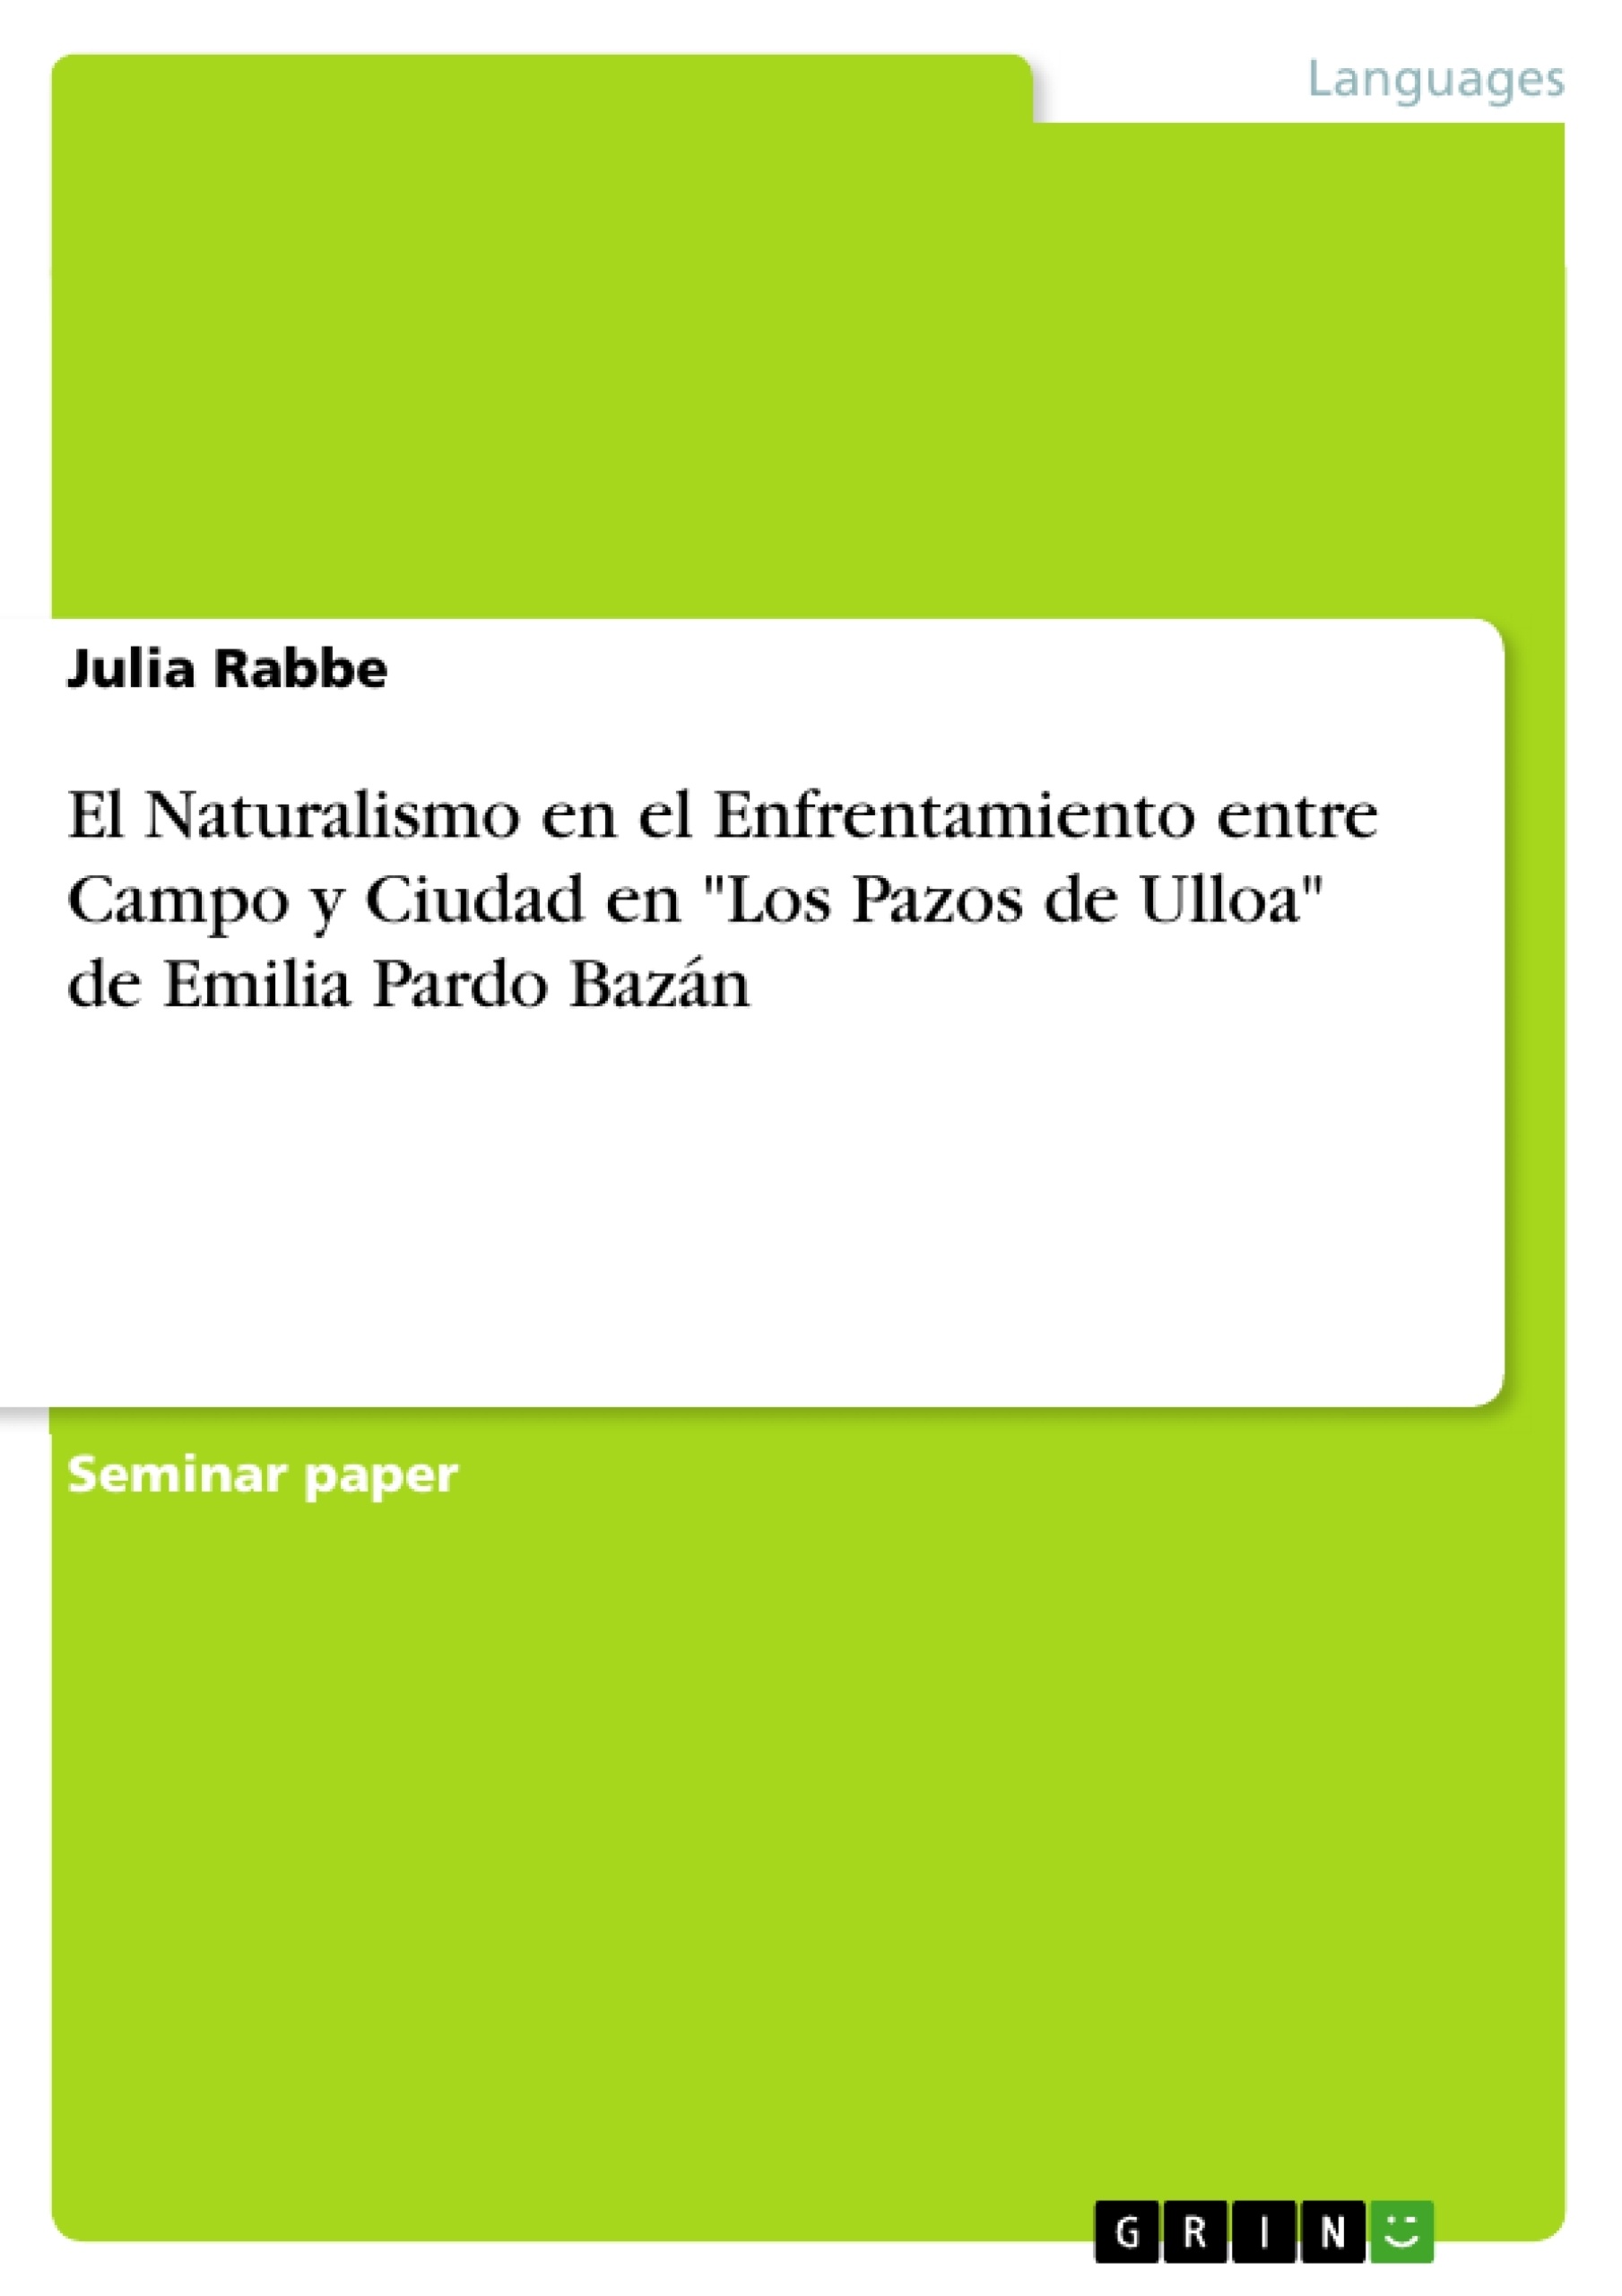 Título: El Naturalismo en el Enfrentamiento entre Campo y Ciudad en "Los Pazos de Ulloa" de Emilia Pardo Bazán